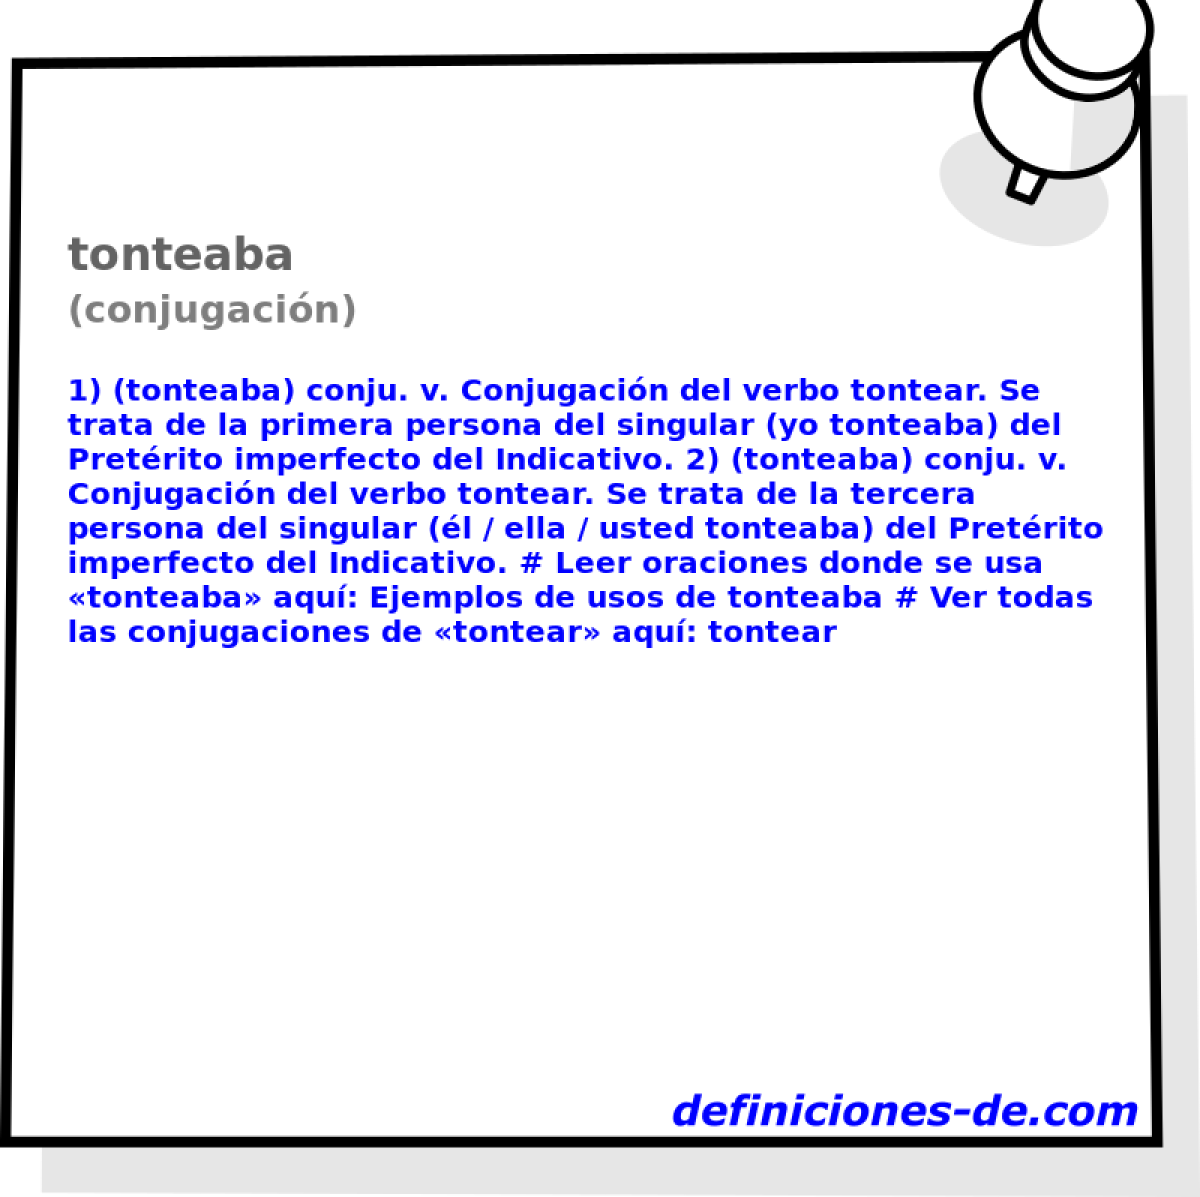 tonteaba (conjugacin)